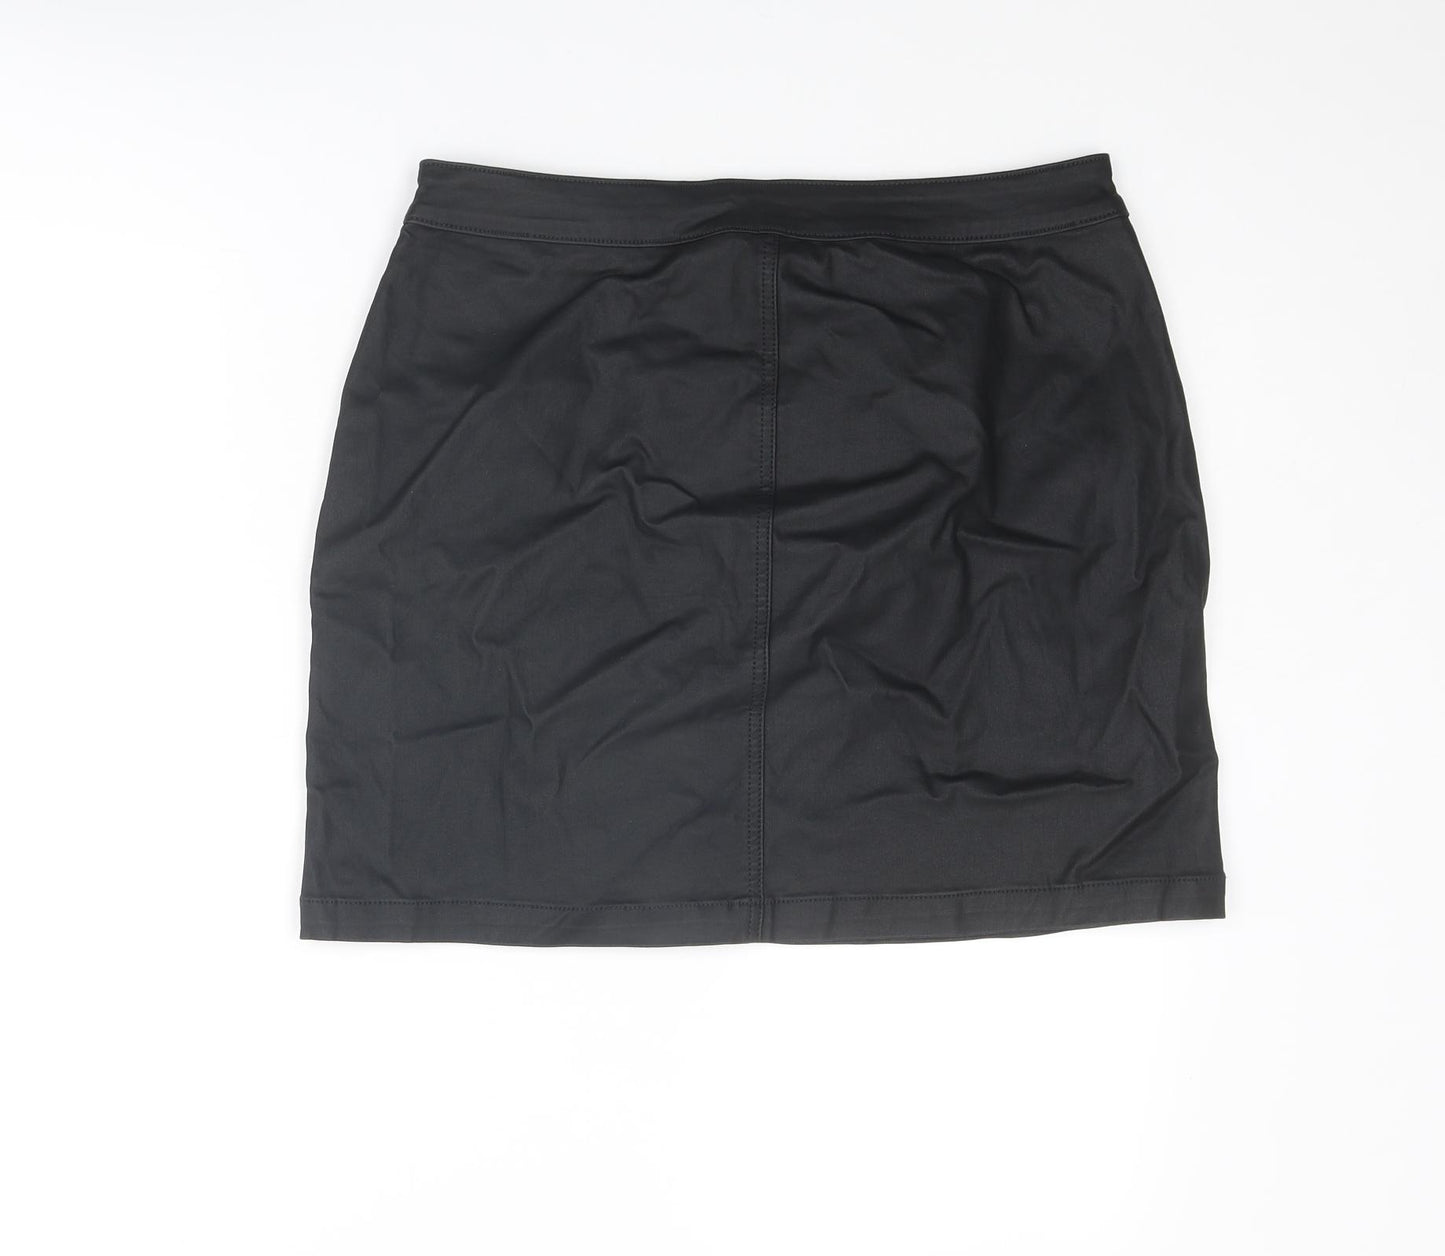 NEXT Womens Black Viscose A-Line Skirt Size 12 Zip